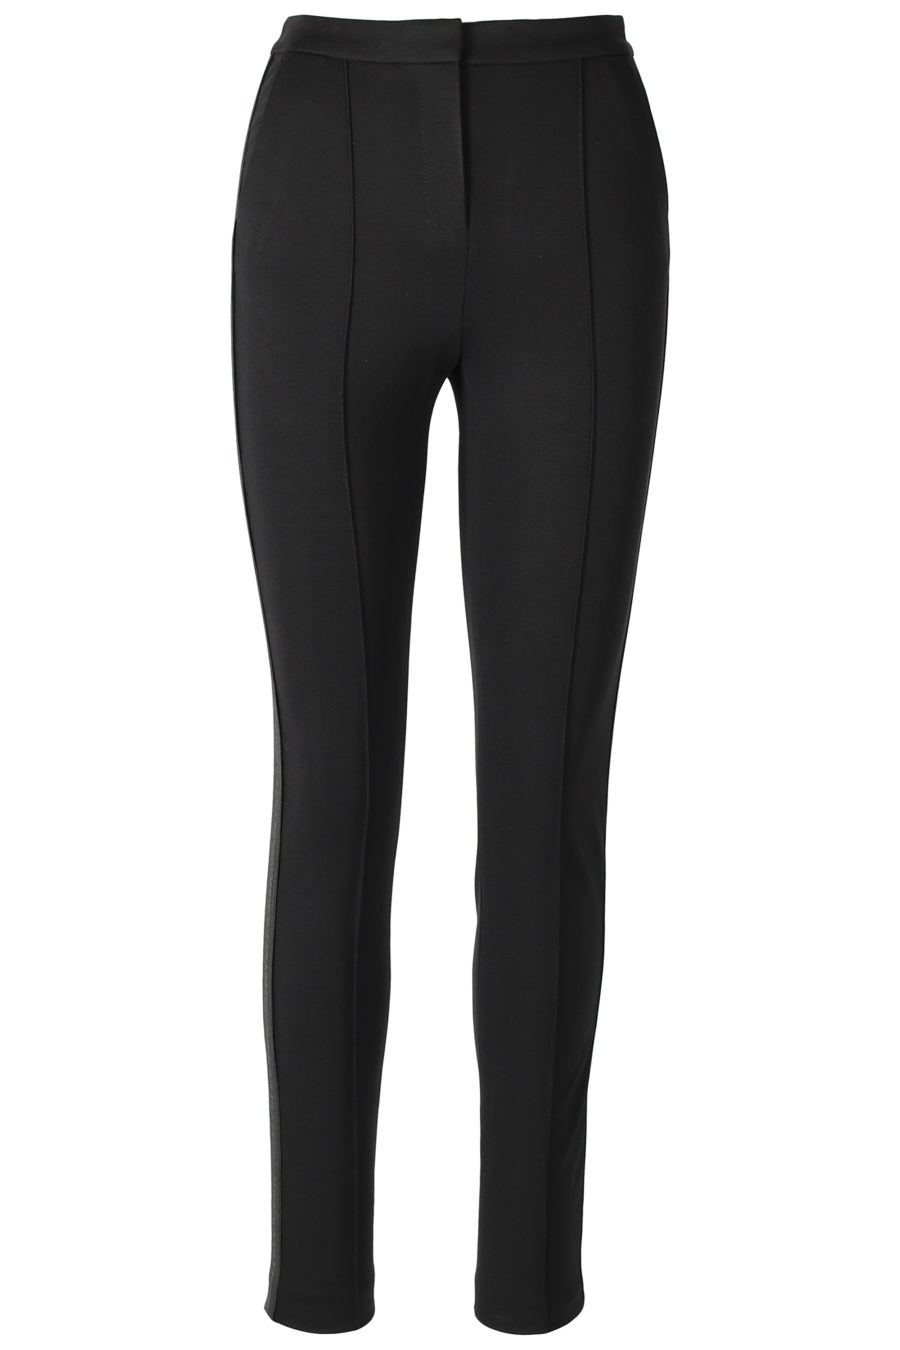 Pantalones negros ajustados con cinta logotipo - IMG 3195